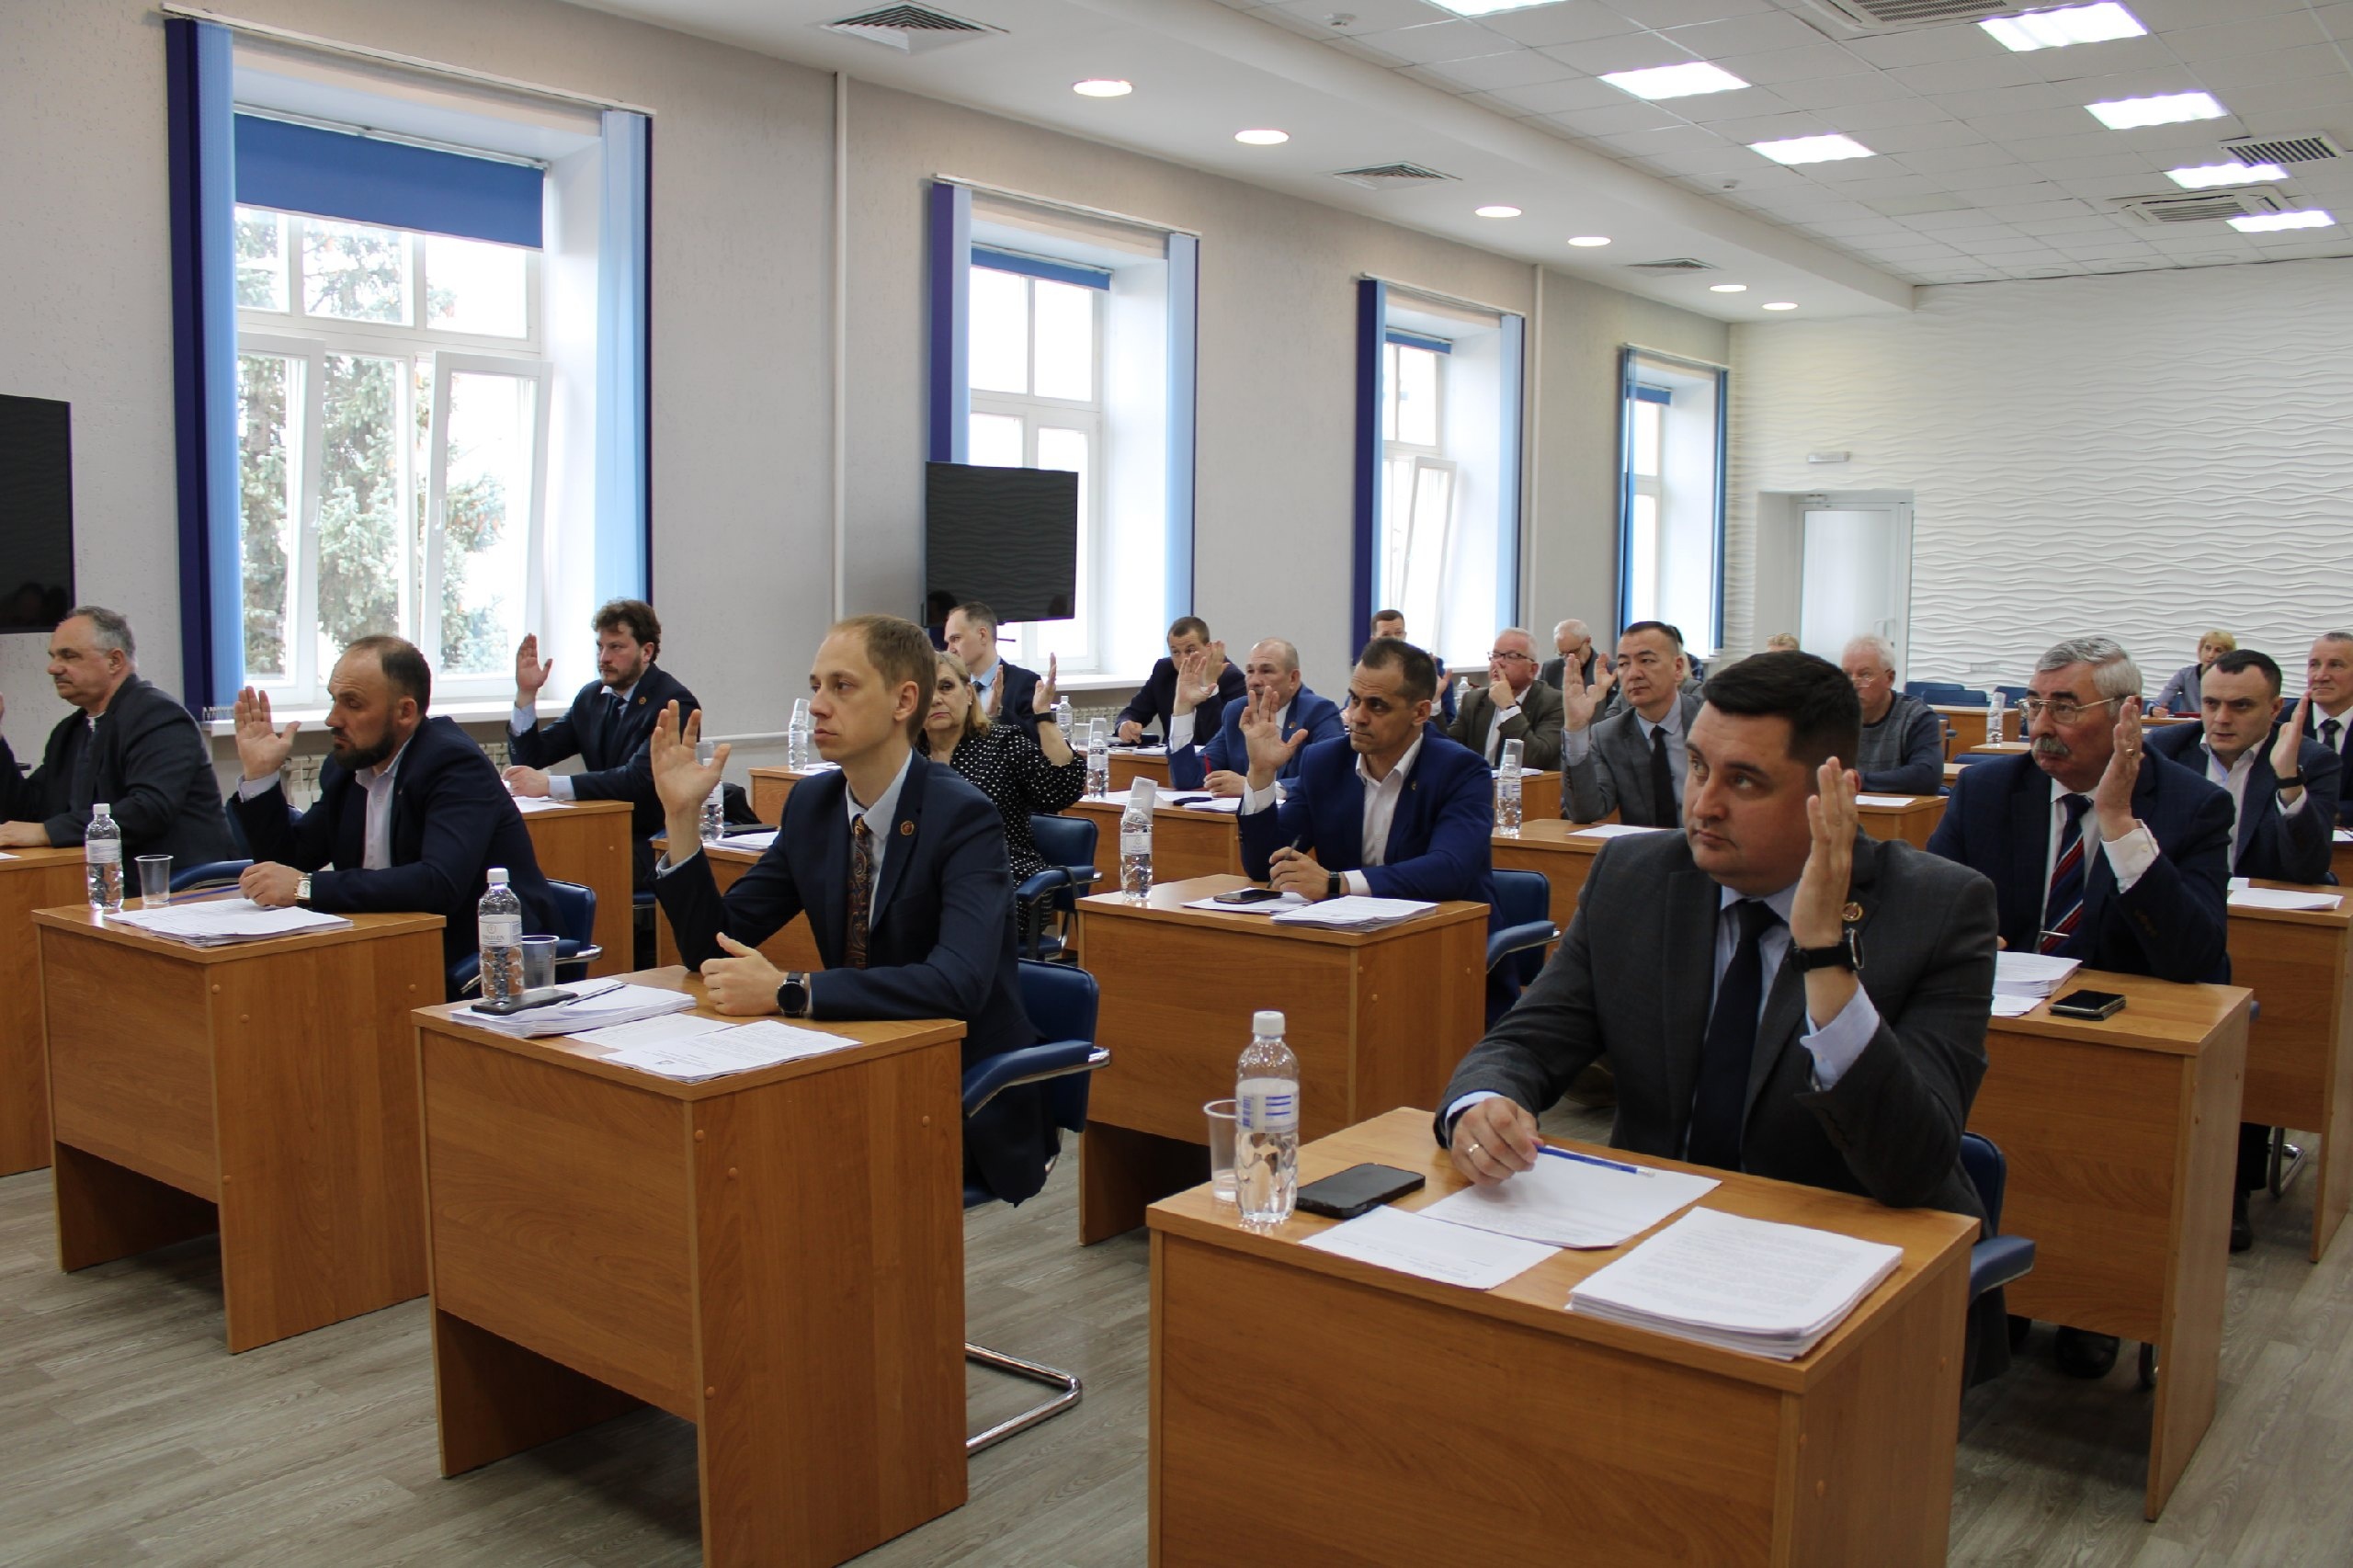 Сегодня в большом зале администрации состоялось заседание 41-й внеочередной сессии Совета депутатов ЗАТО г. Железногорск